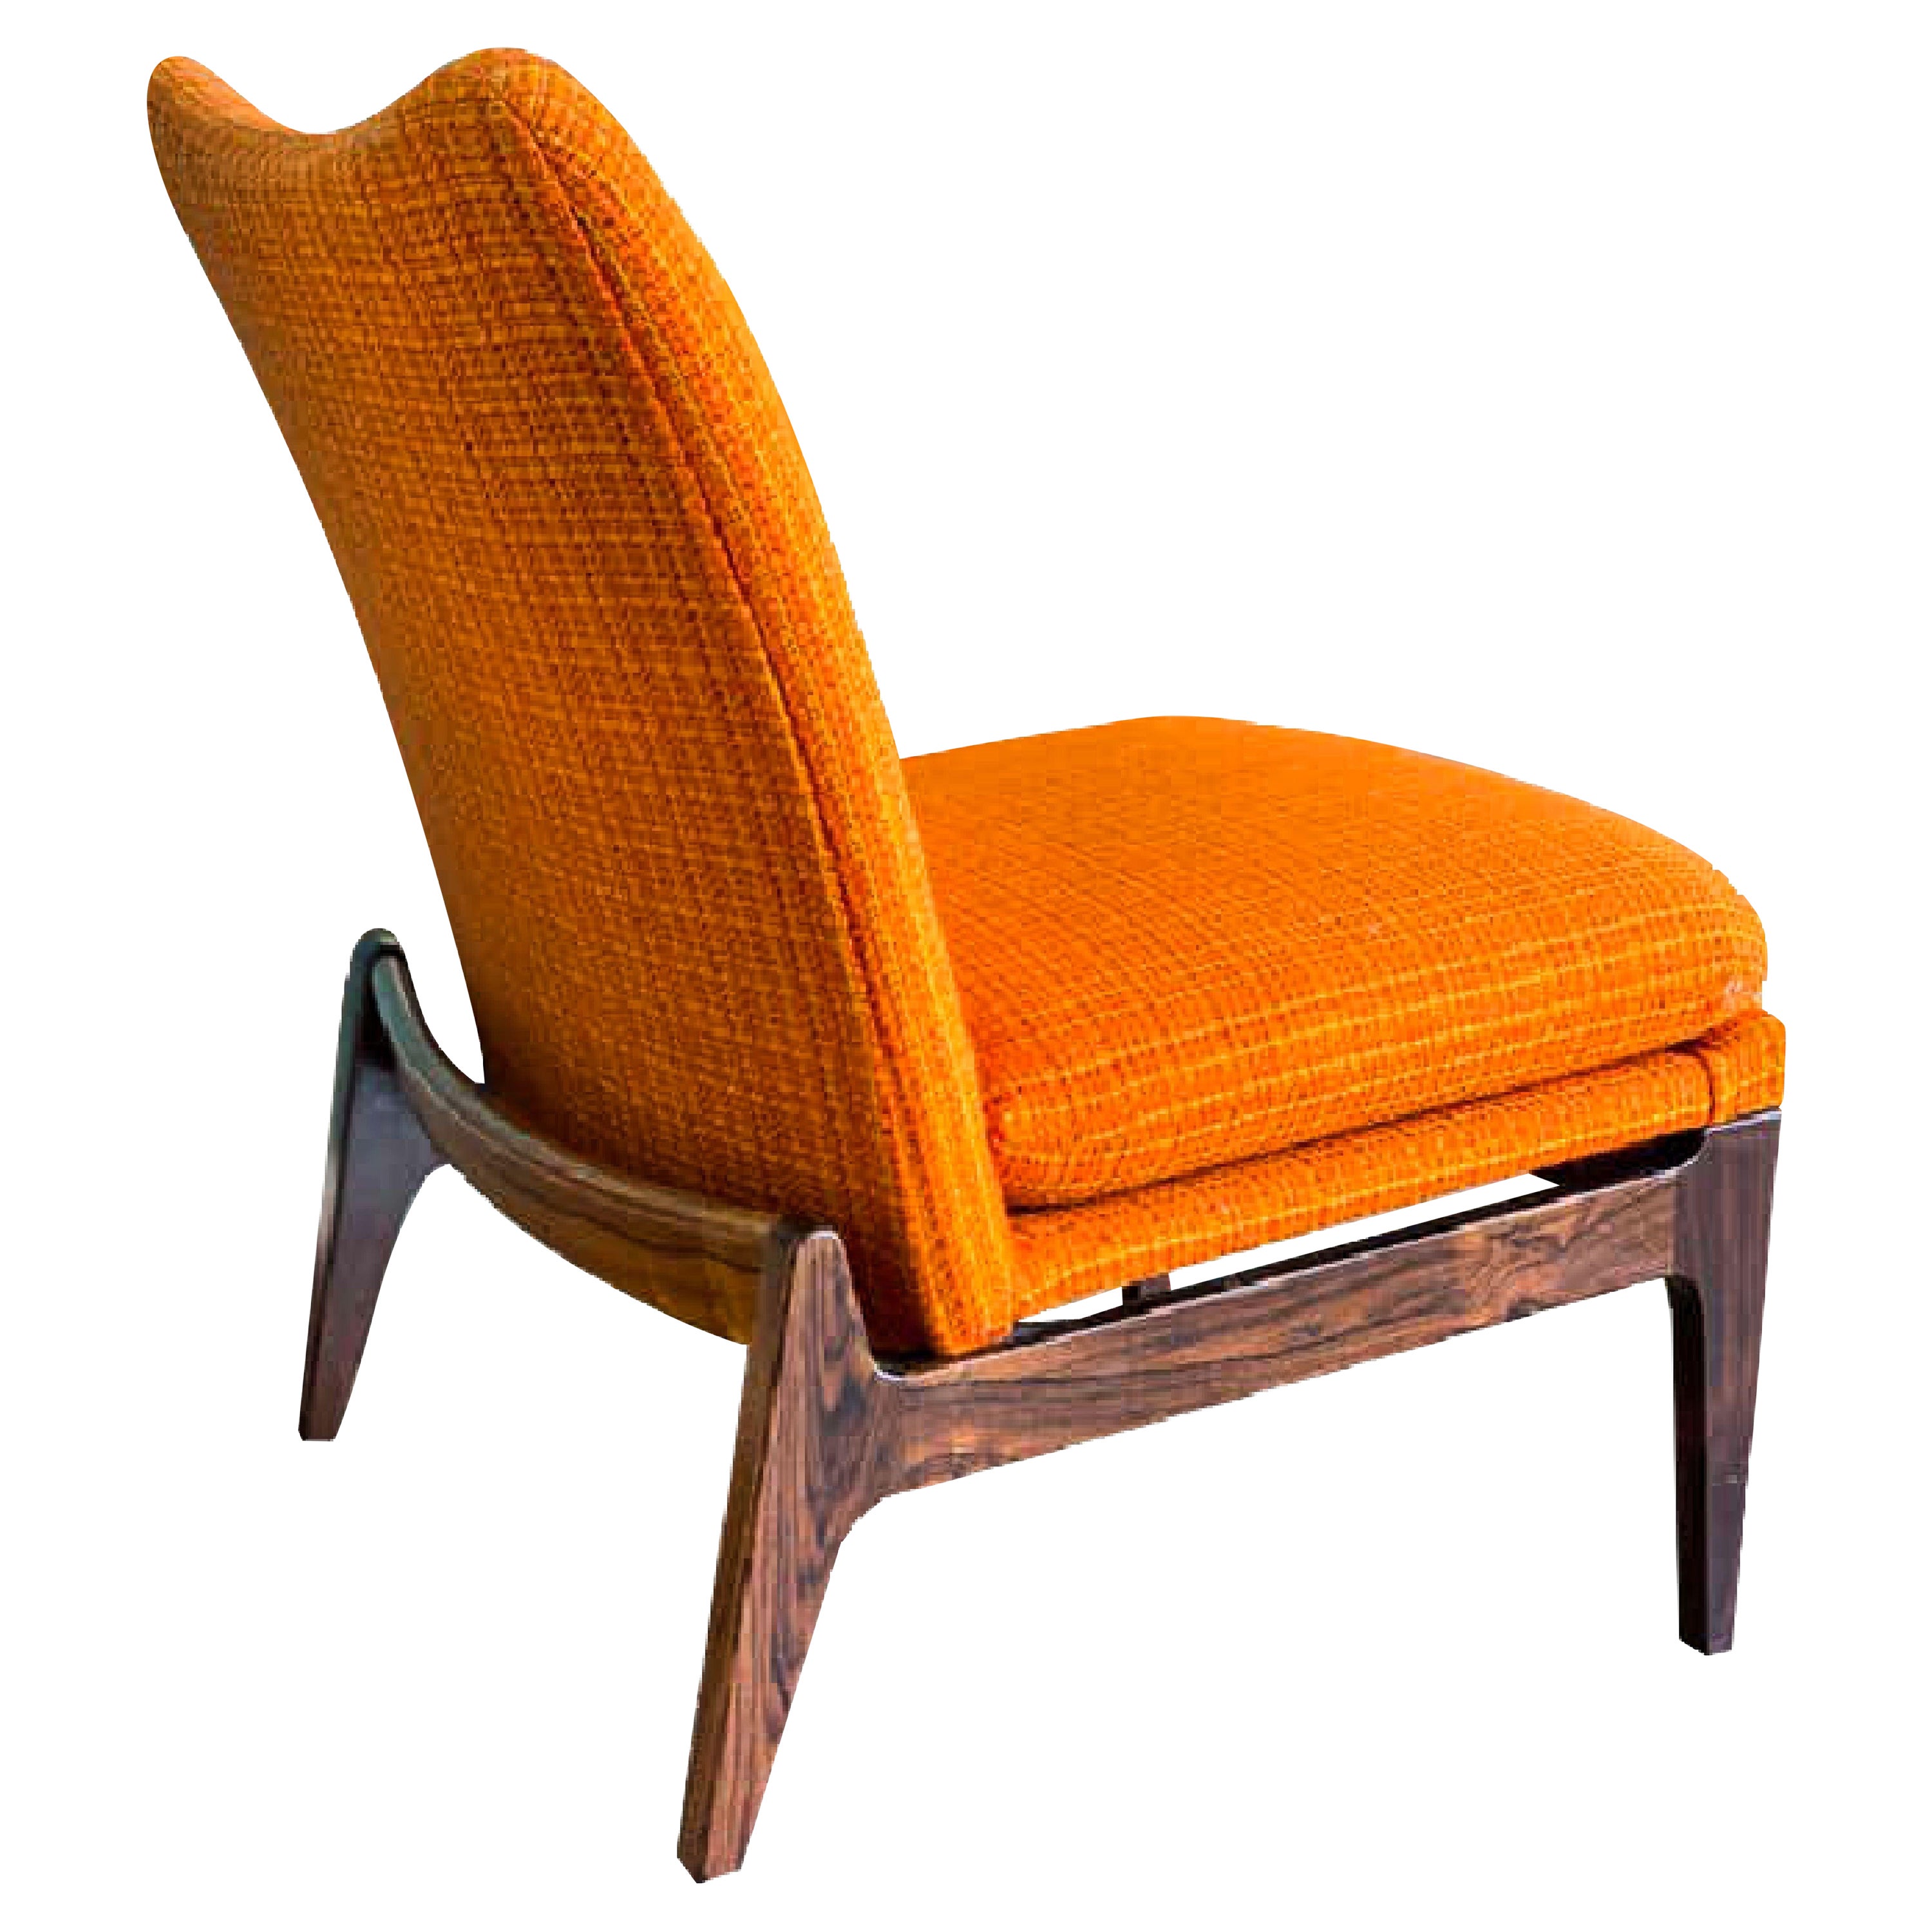 Finn Juhl FD 112 Lounge Chair, Palisander, Cado, Frankreich & Søn, 1960er Jahre, Dänemark.   Wunderschöner Sockel aus Palisanderholz. Etikett des Herstellers auf der Unterseite: 